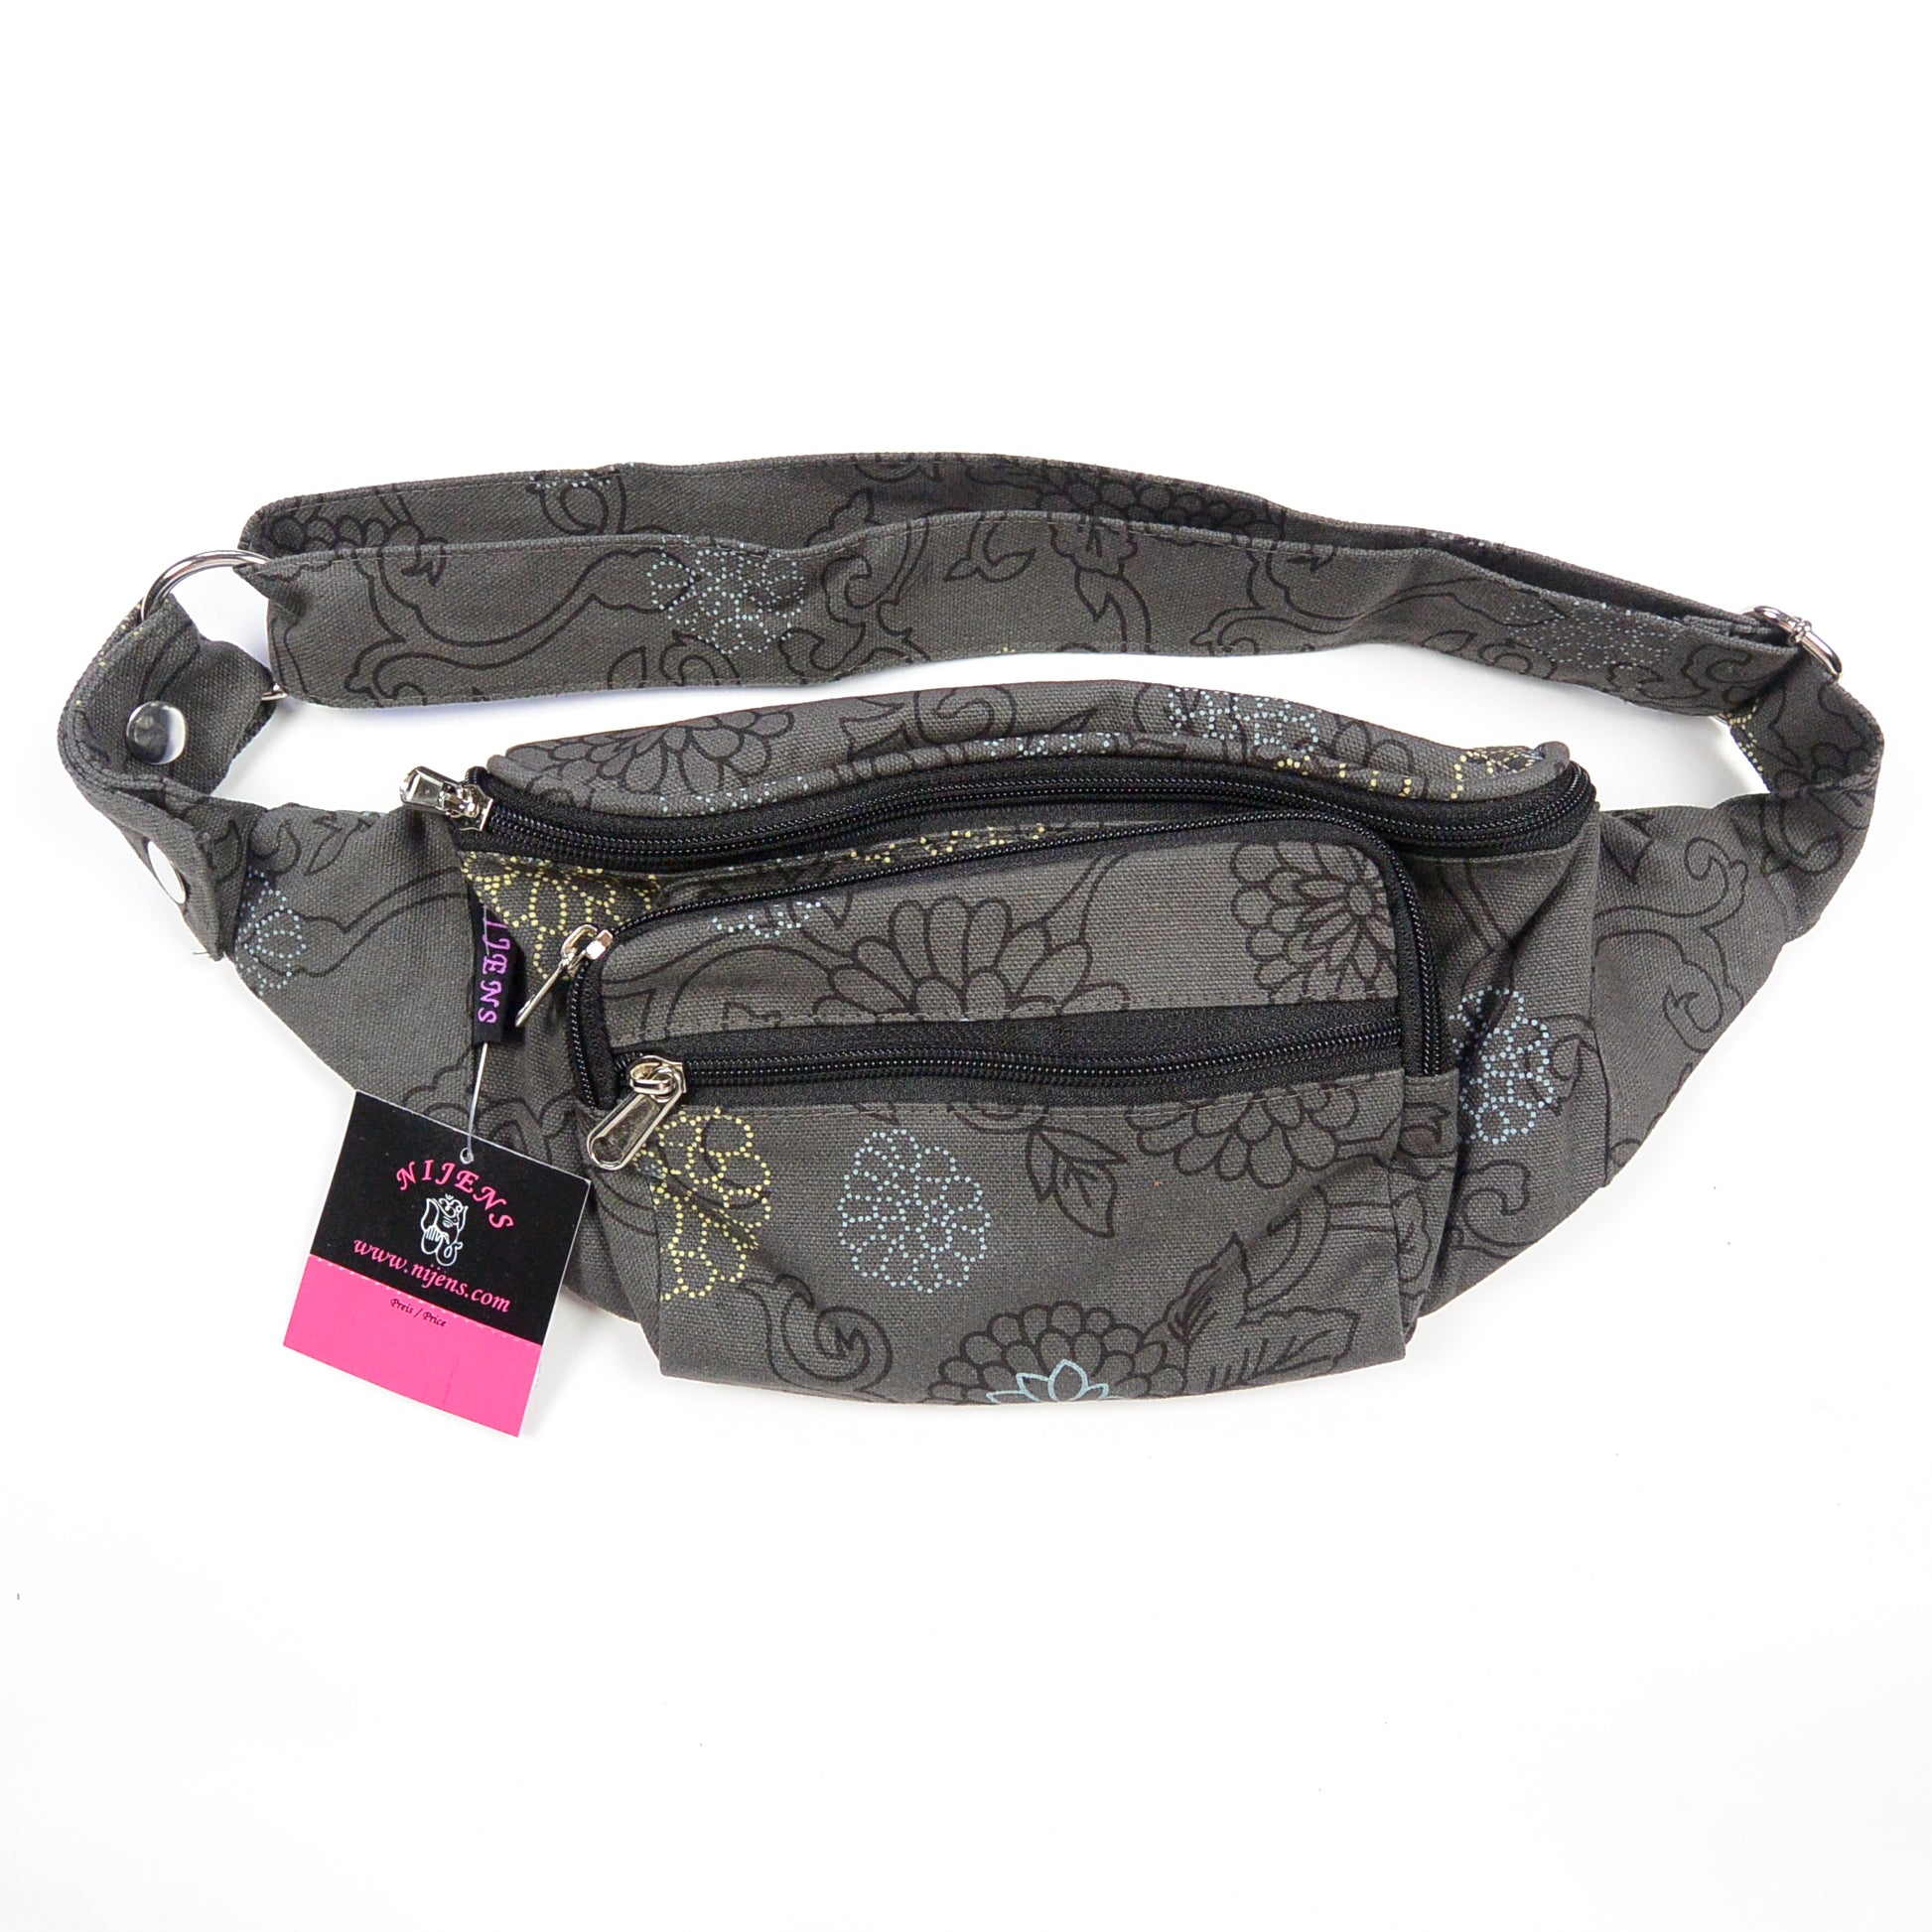 Nijens Gassi-Tasche Bum-Bag für Hundetraining Tasche mit Blumen Grau NJ-Torino 25